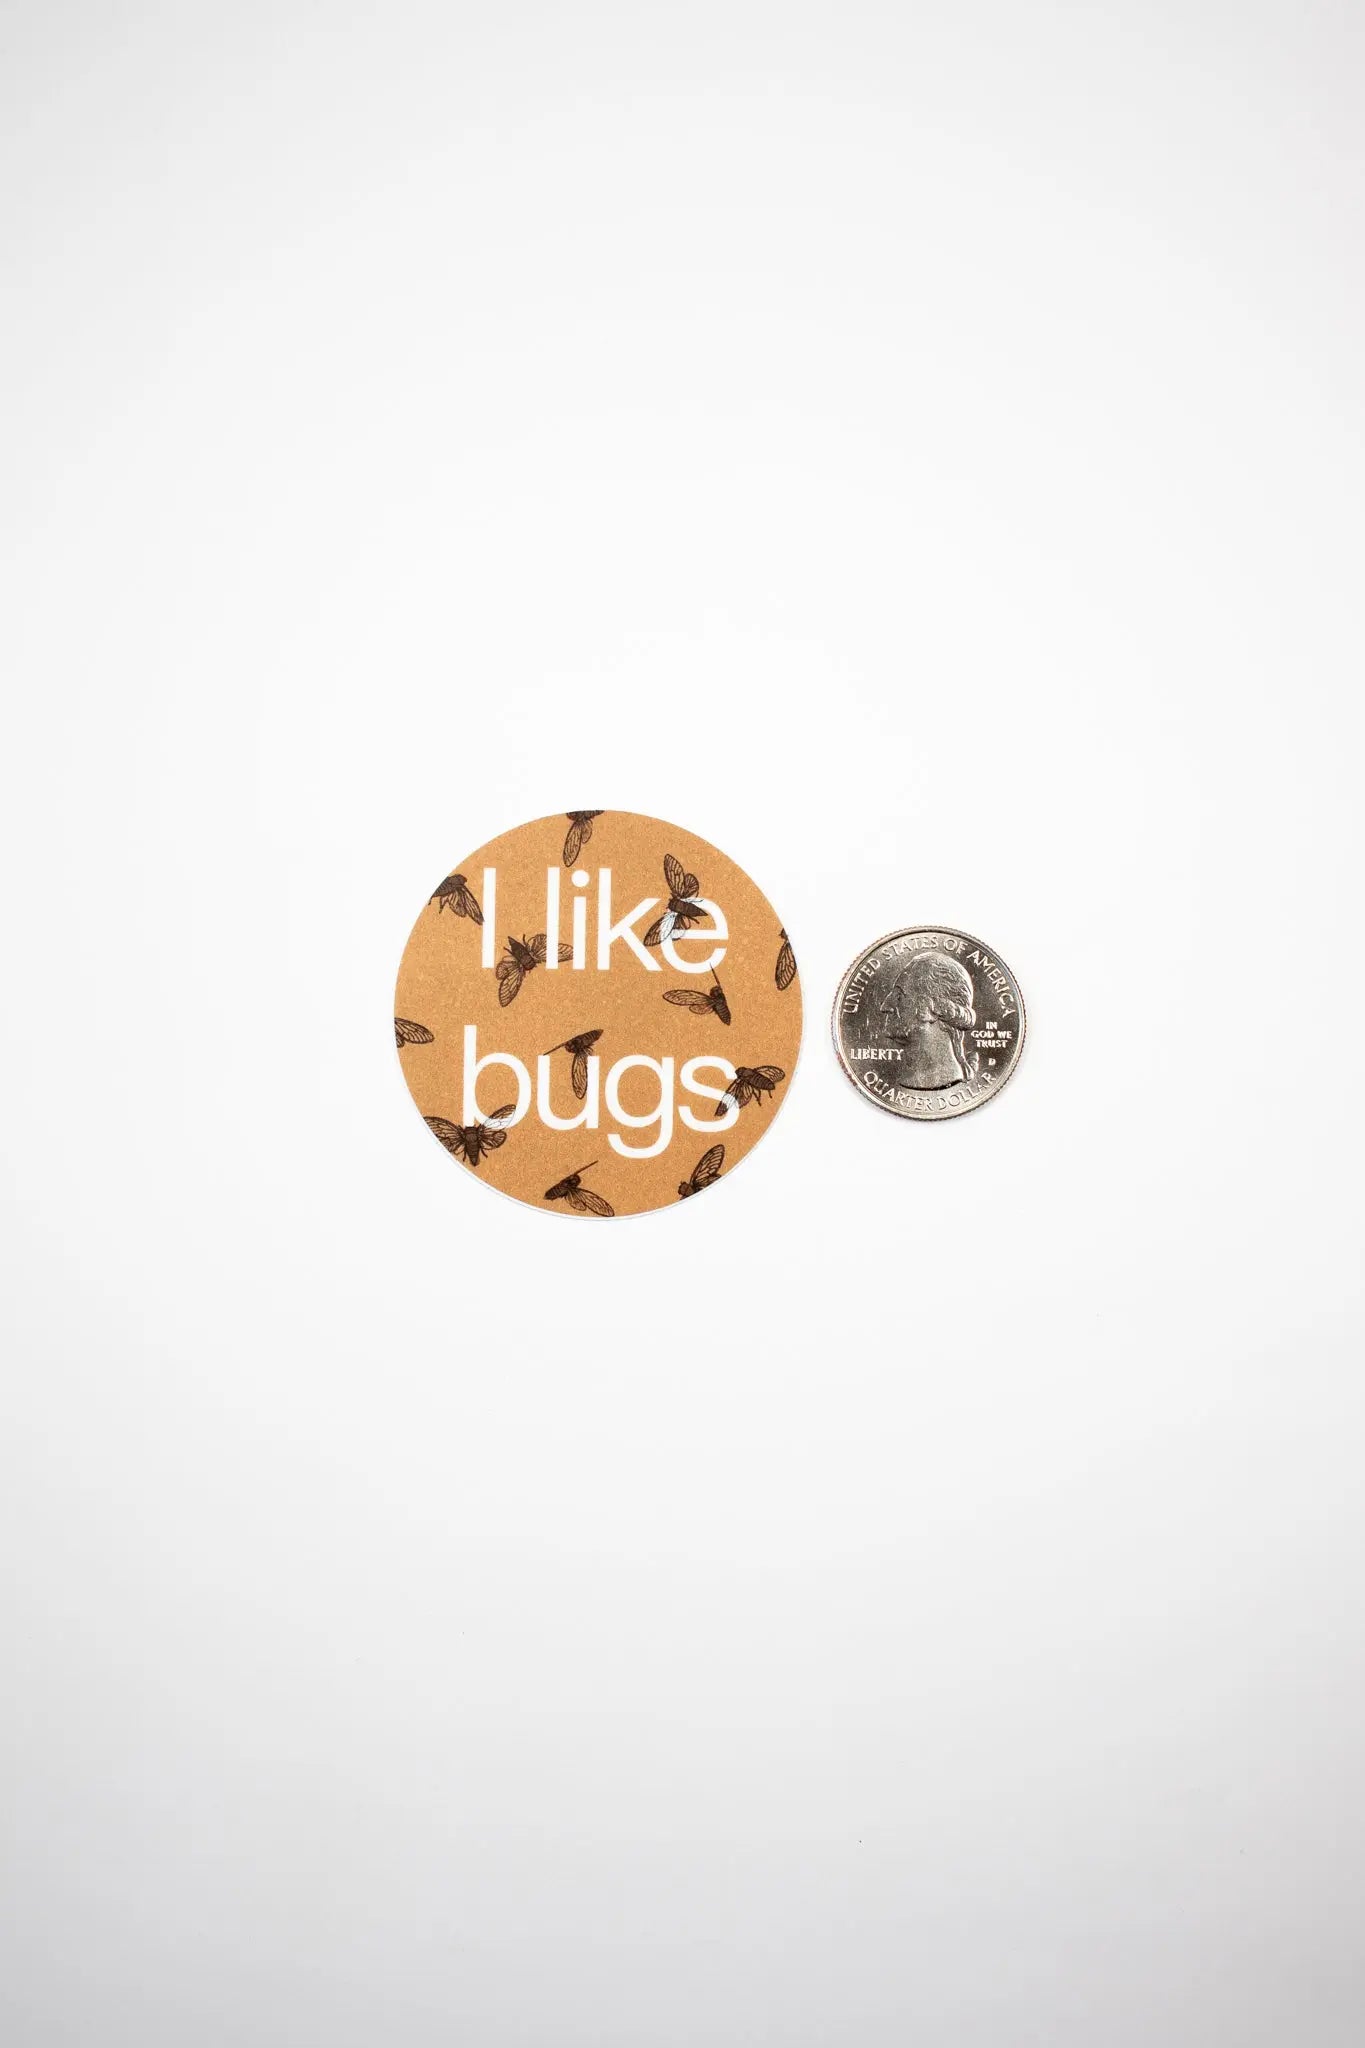 "I like bugs" Sticker